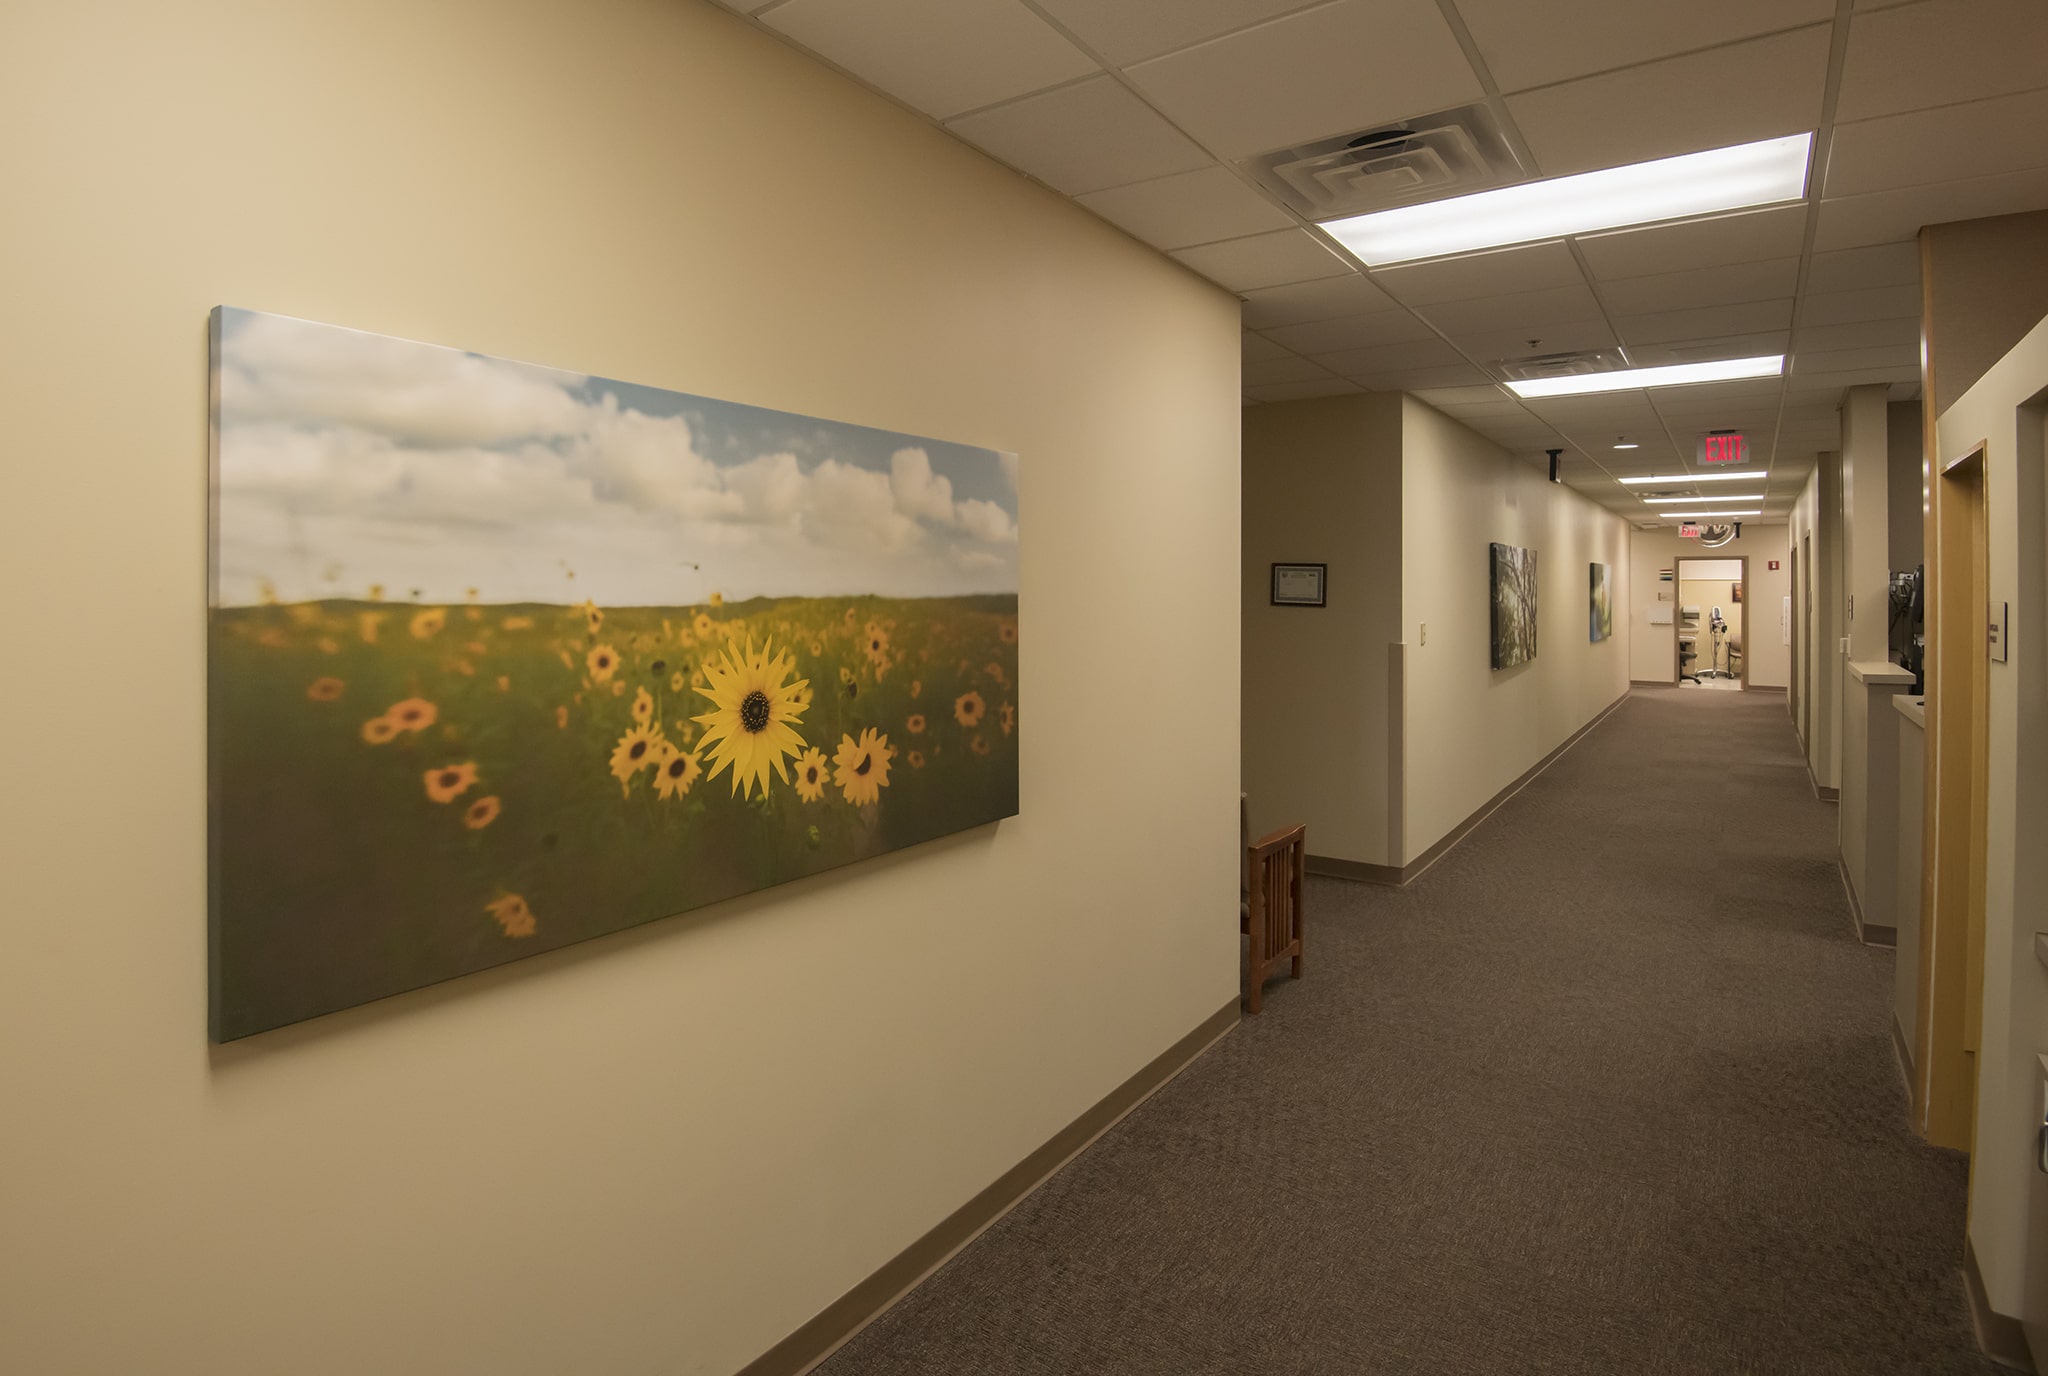 Long Panorama Artwork in Hall